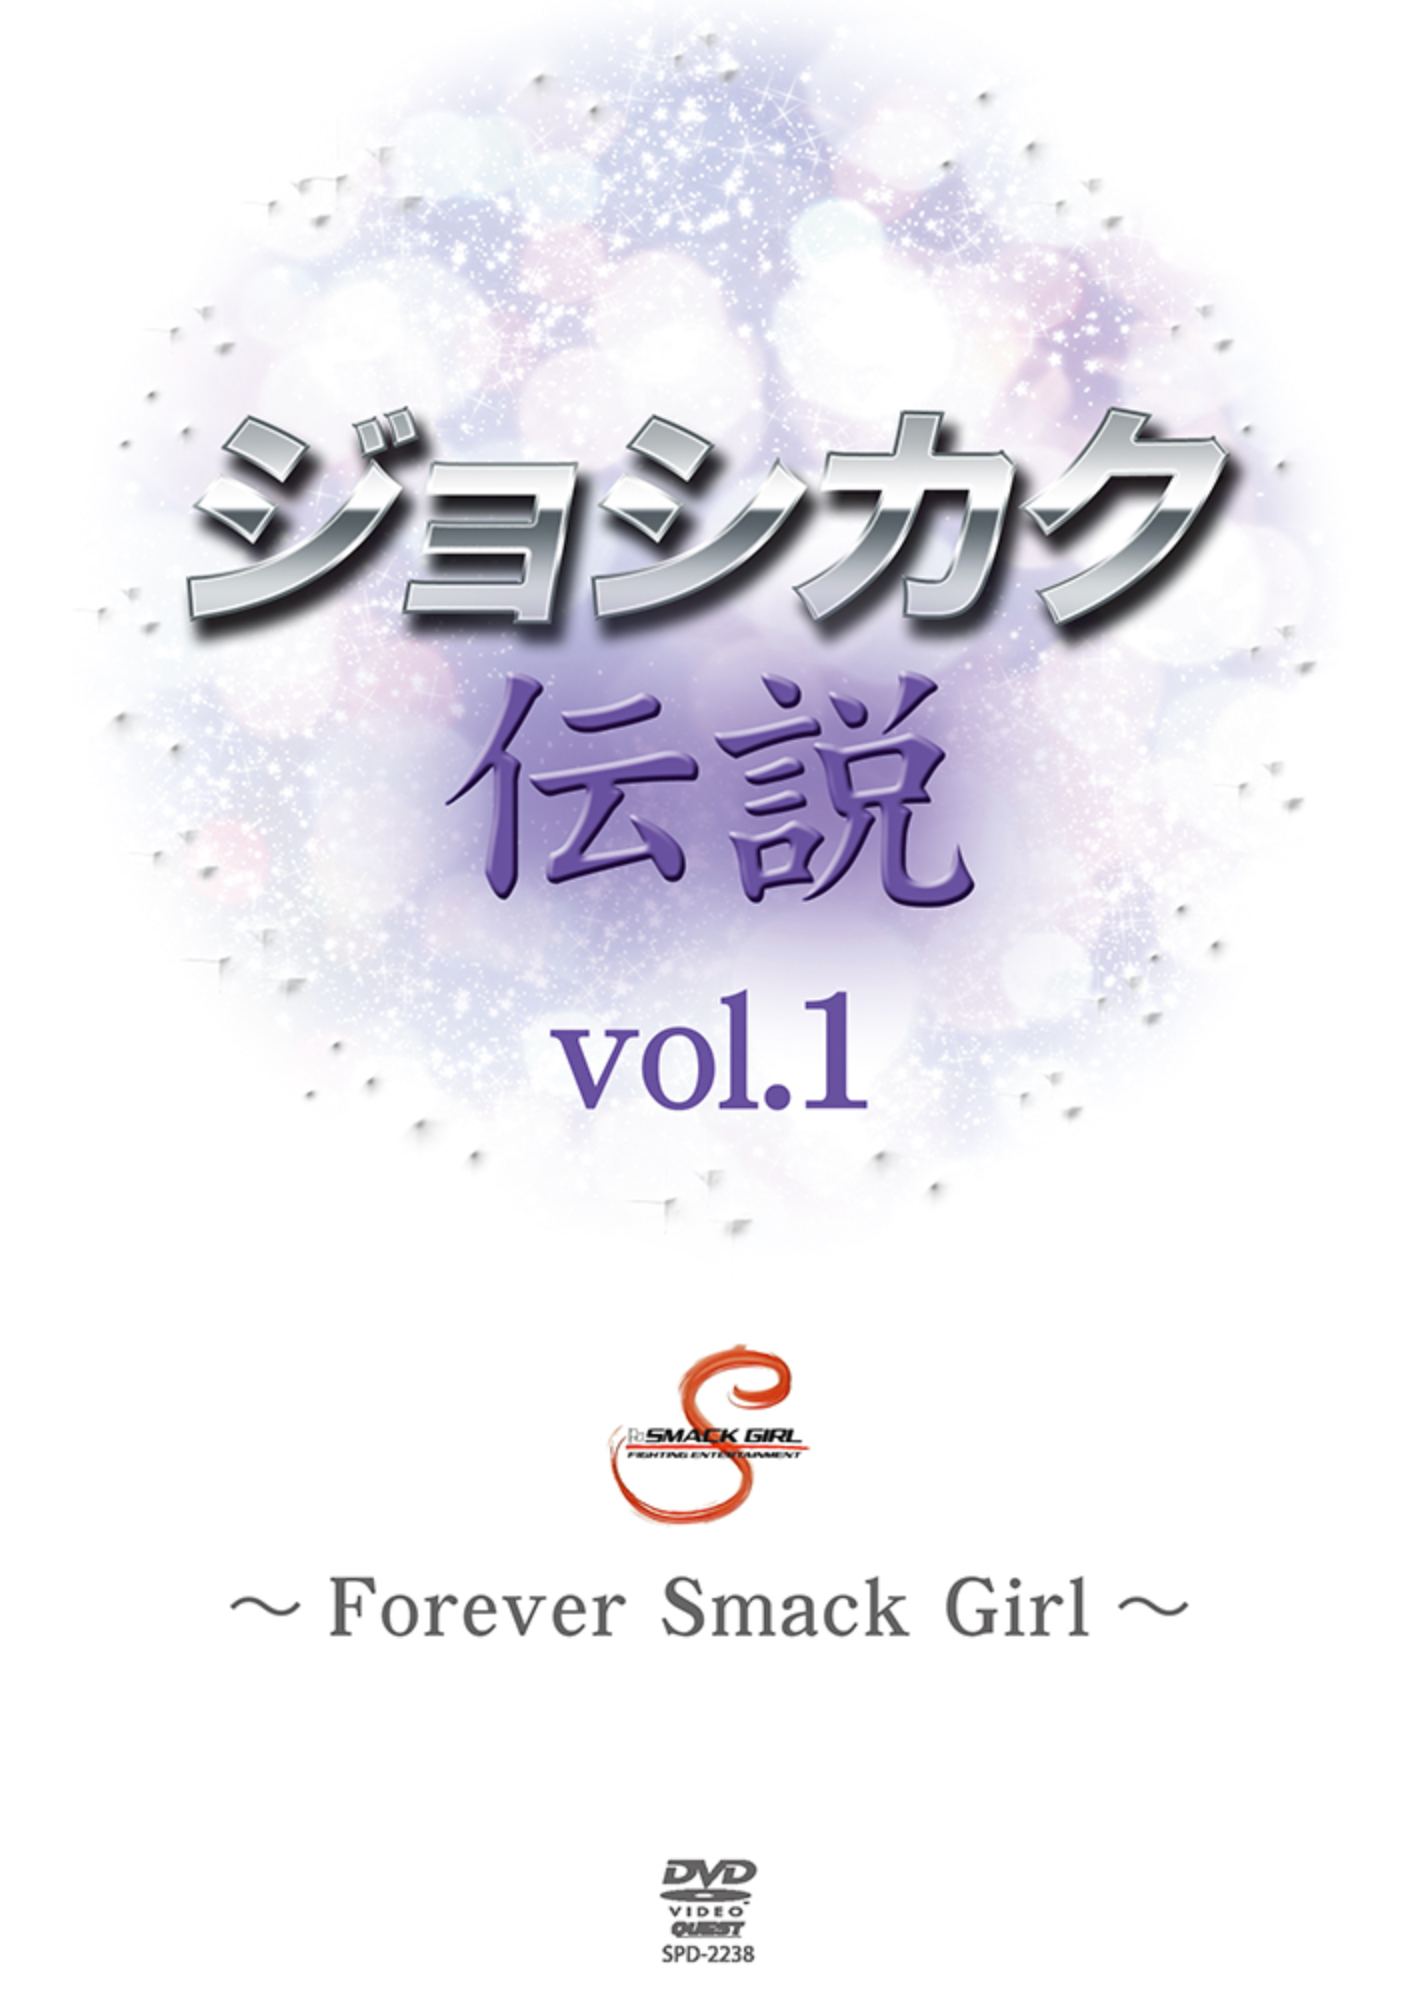 Forever Smack Girl Vol 1 DVD - Budovideos Inc